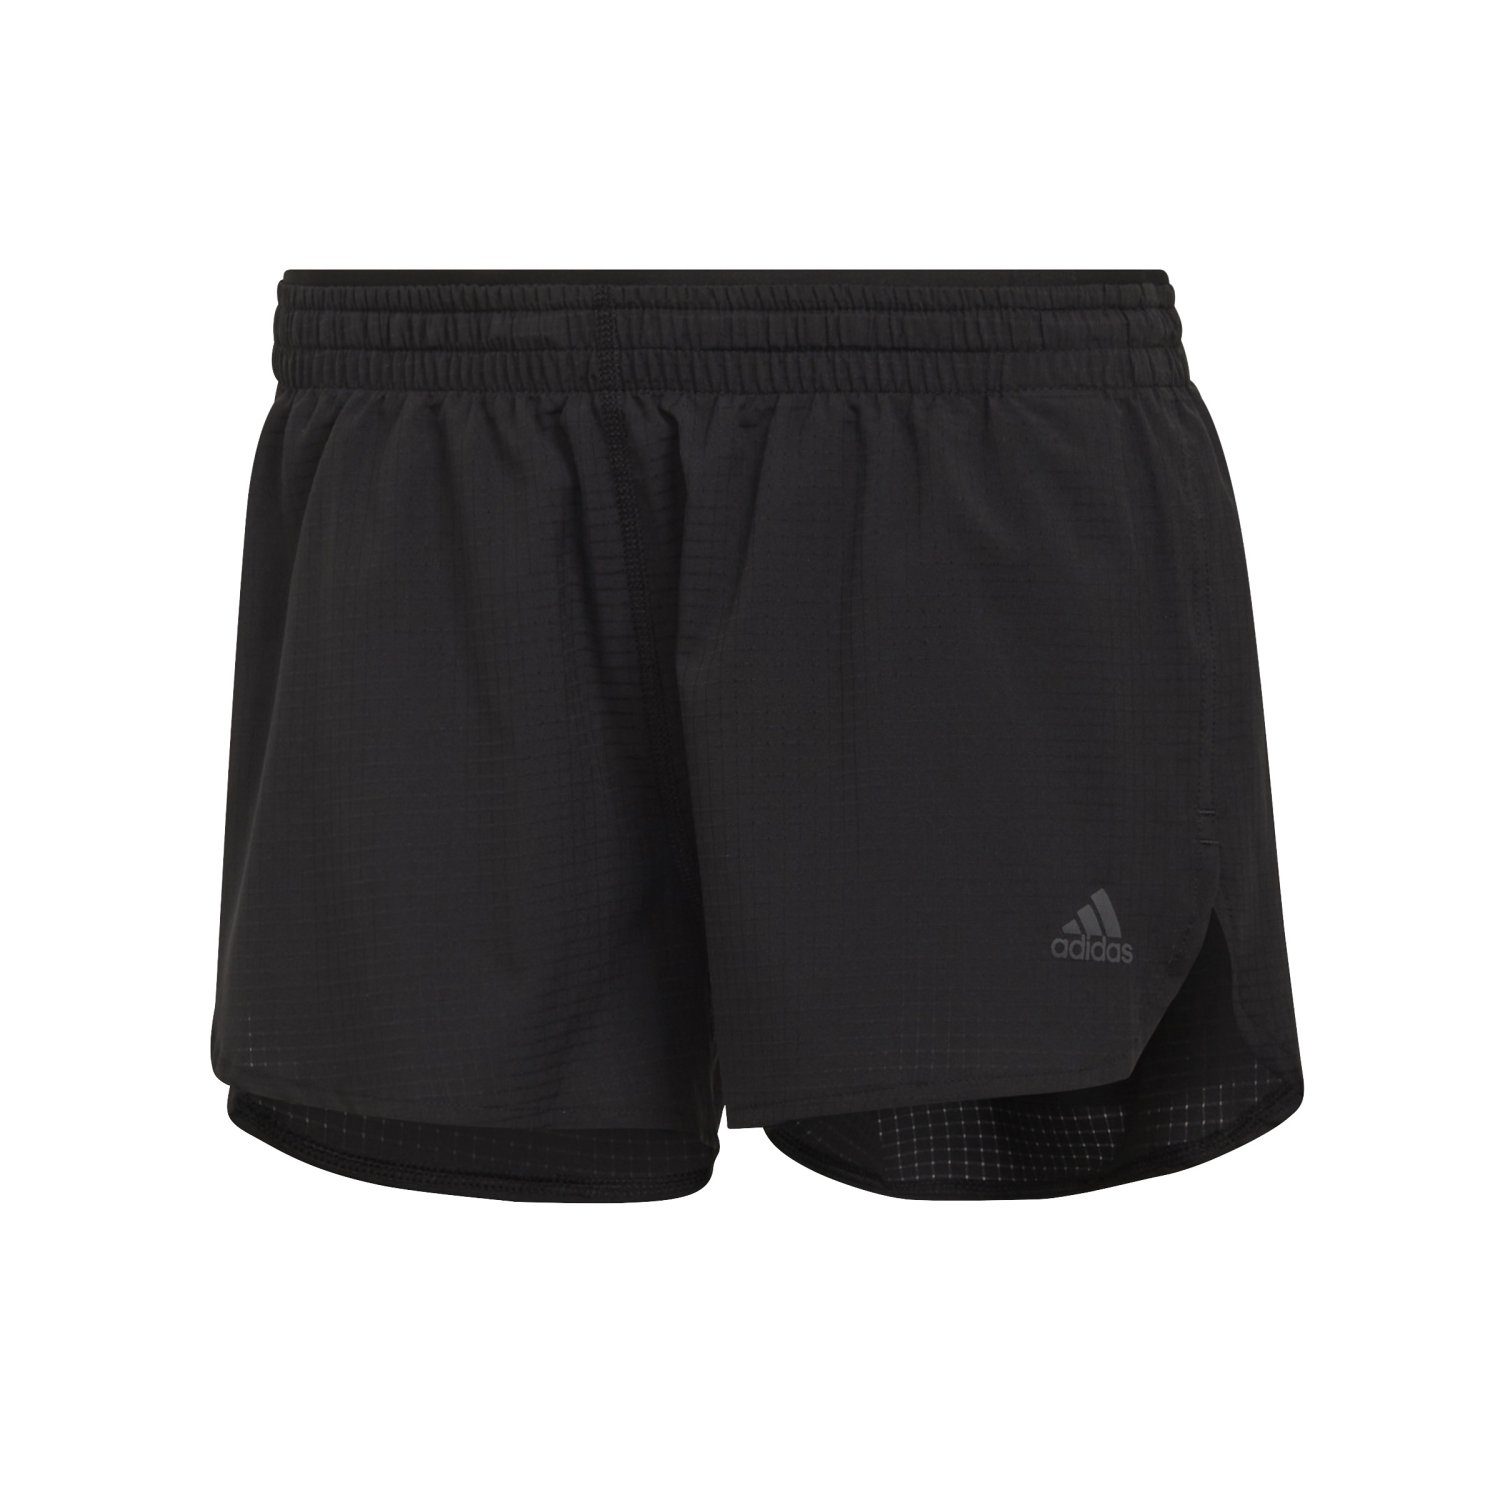 adidas Herren Baumwolle Shorts online kaufen | OTTO